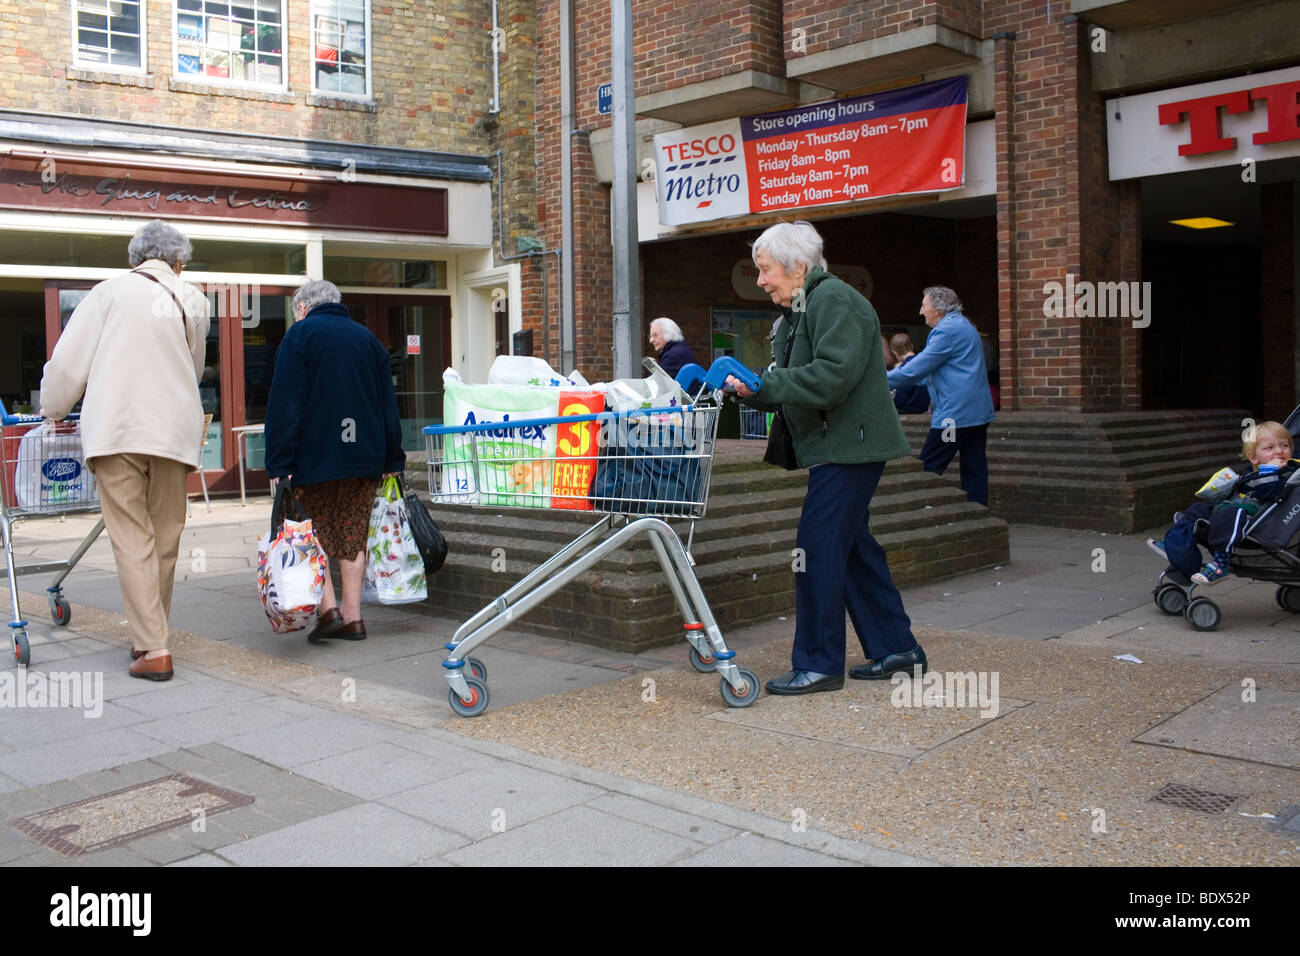 Una vecchia donna spinge un carrello pieno di shopping dal supermercato Tesco compreso un value pack di rotolo di carta igienica. Foto Stock